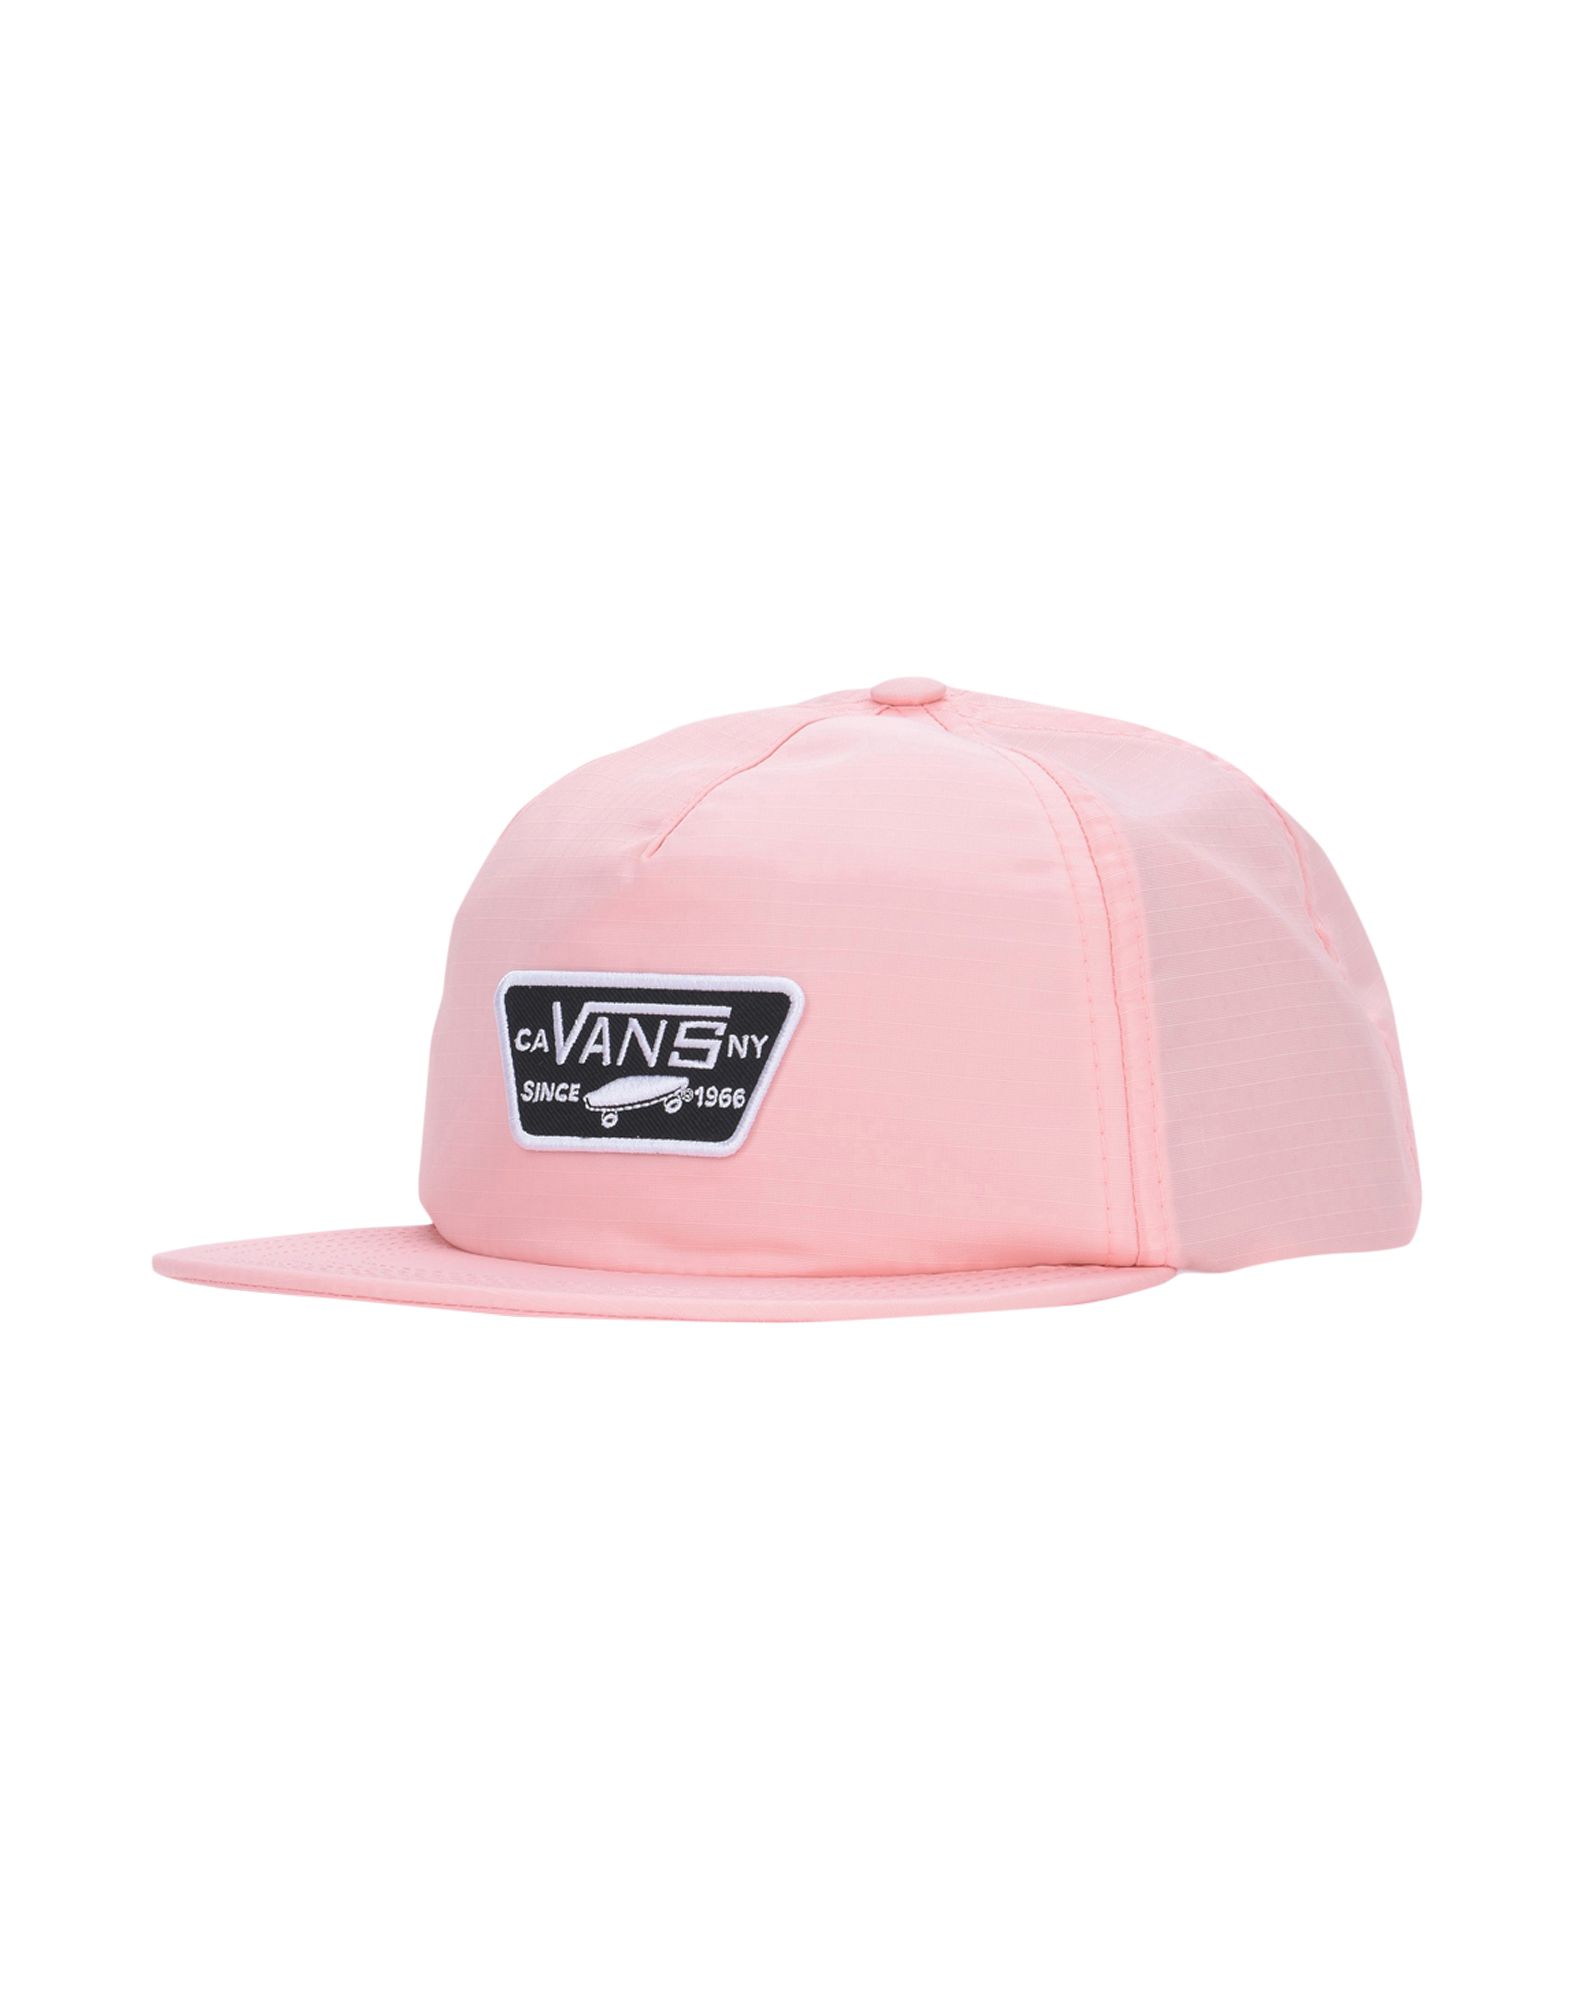 《送料無料》VANS レディース 帽子 ピンク one size ナイロン 100% REBEL RIDERS HAT